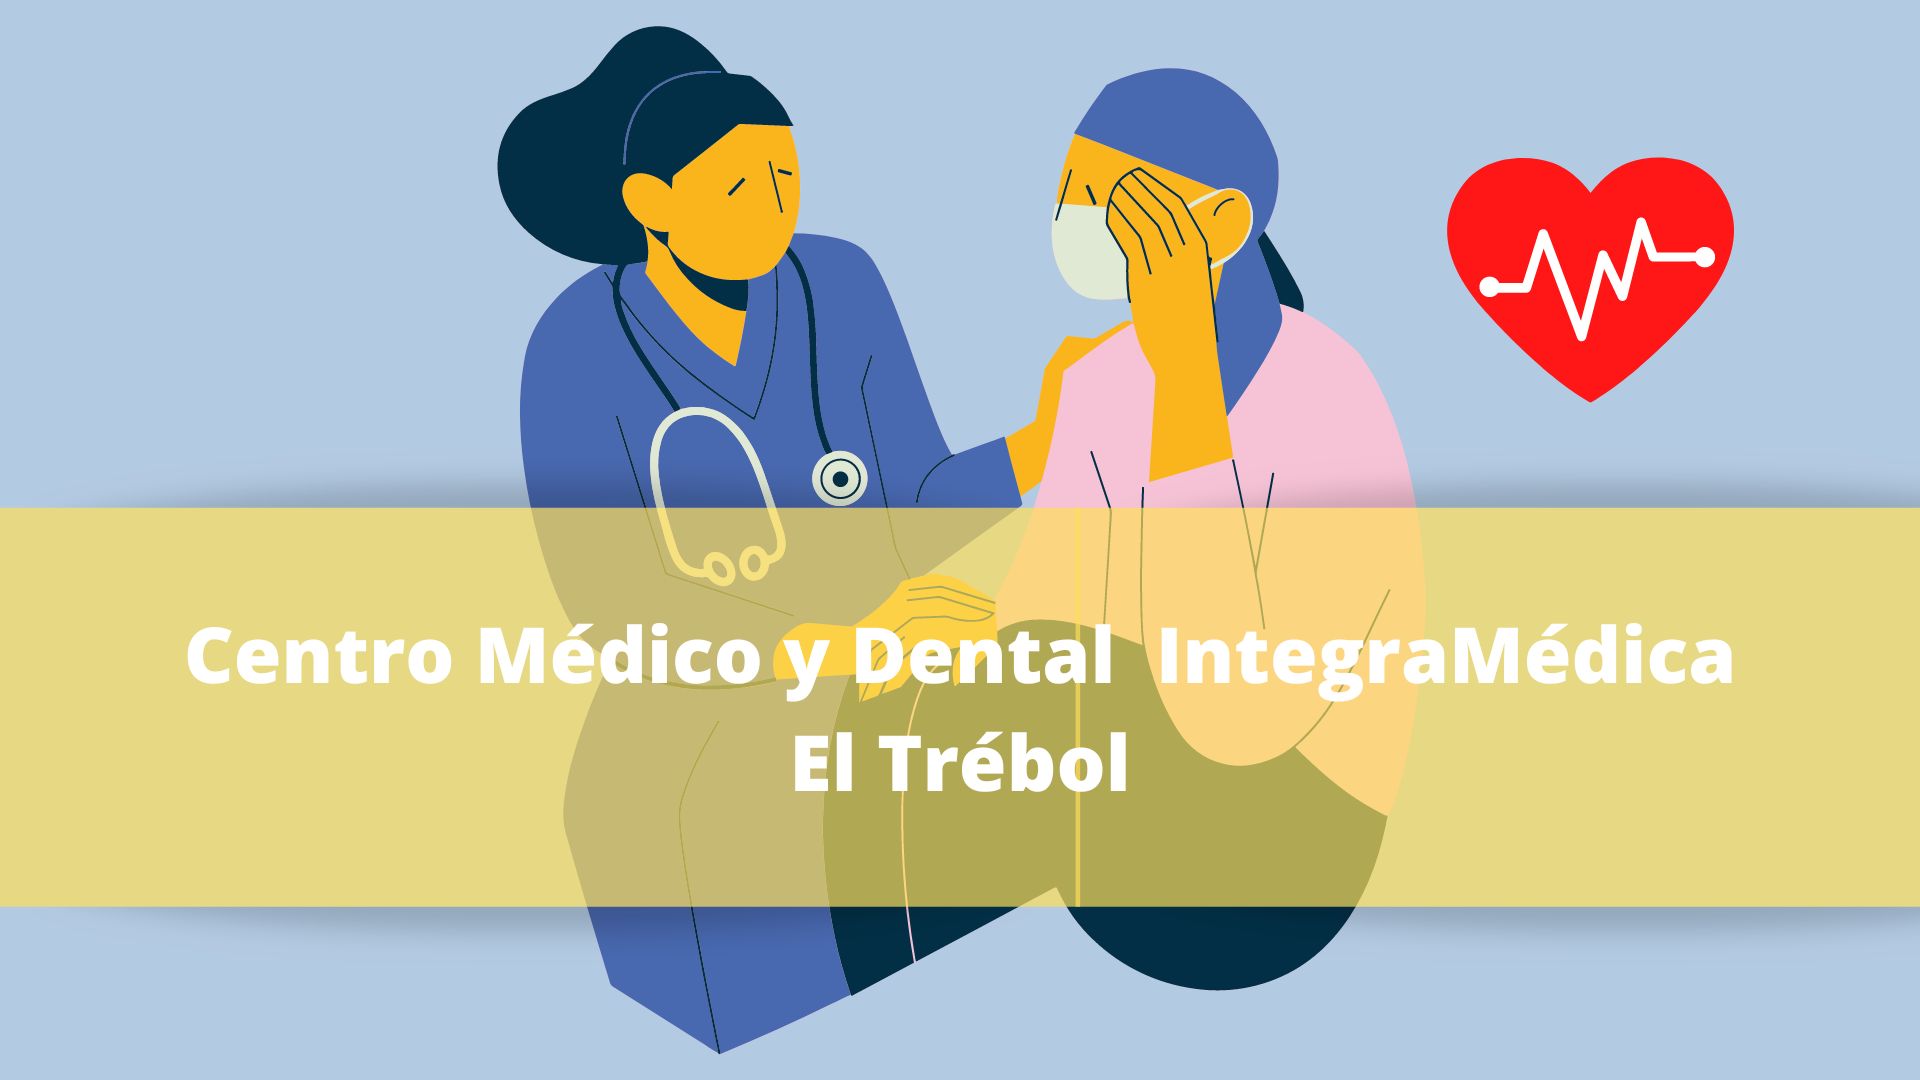 Centro Médico y Dental IntegraMédica El Trébol